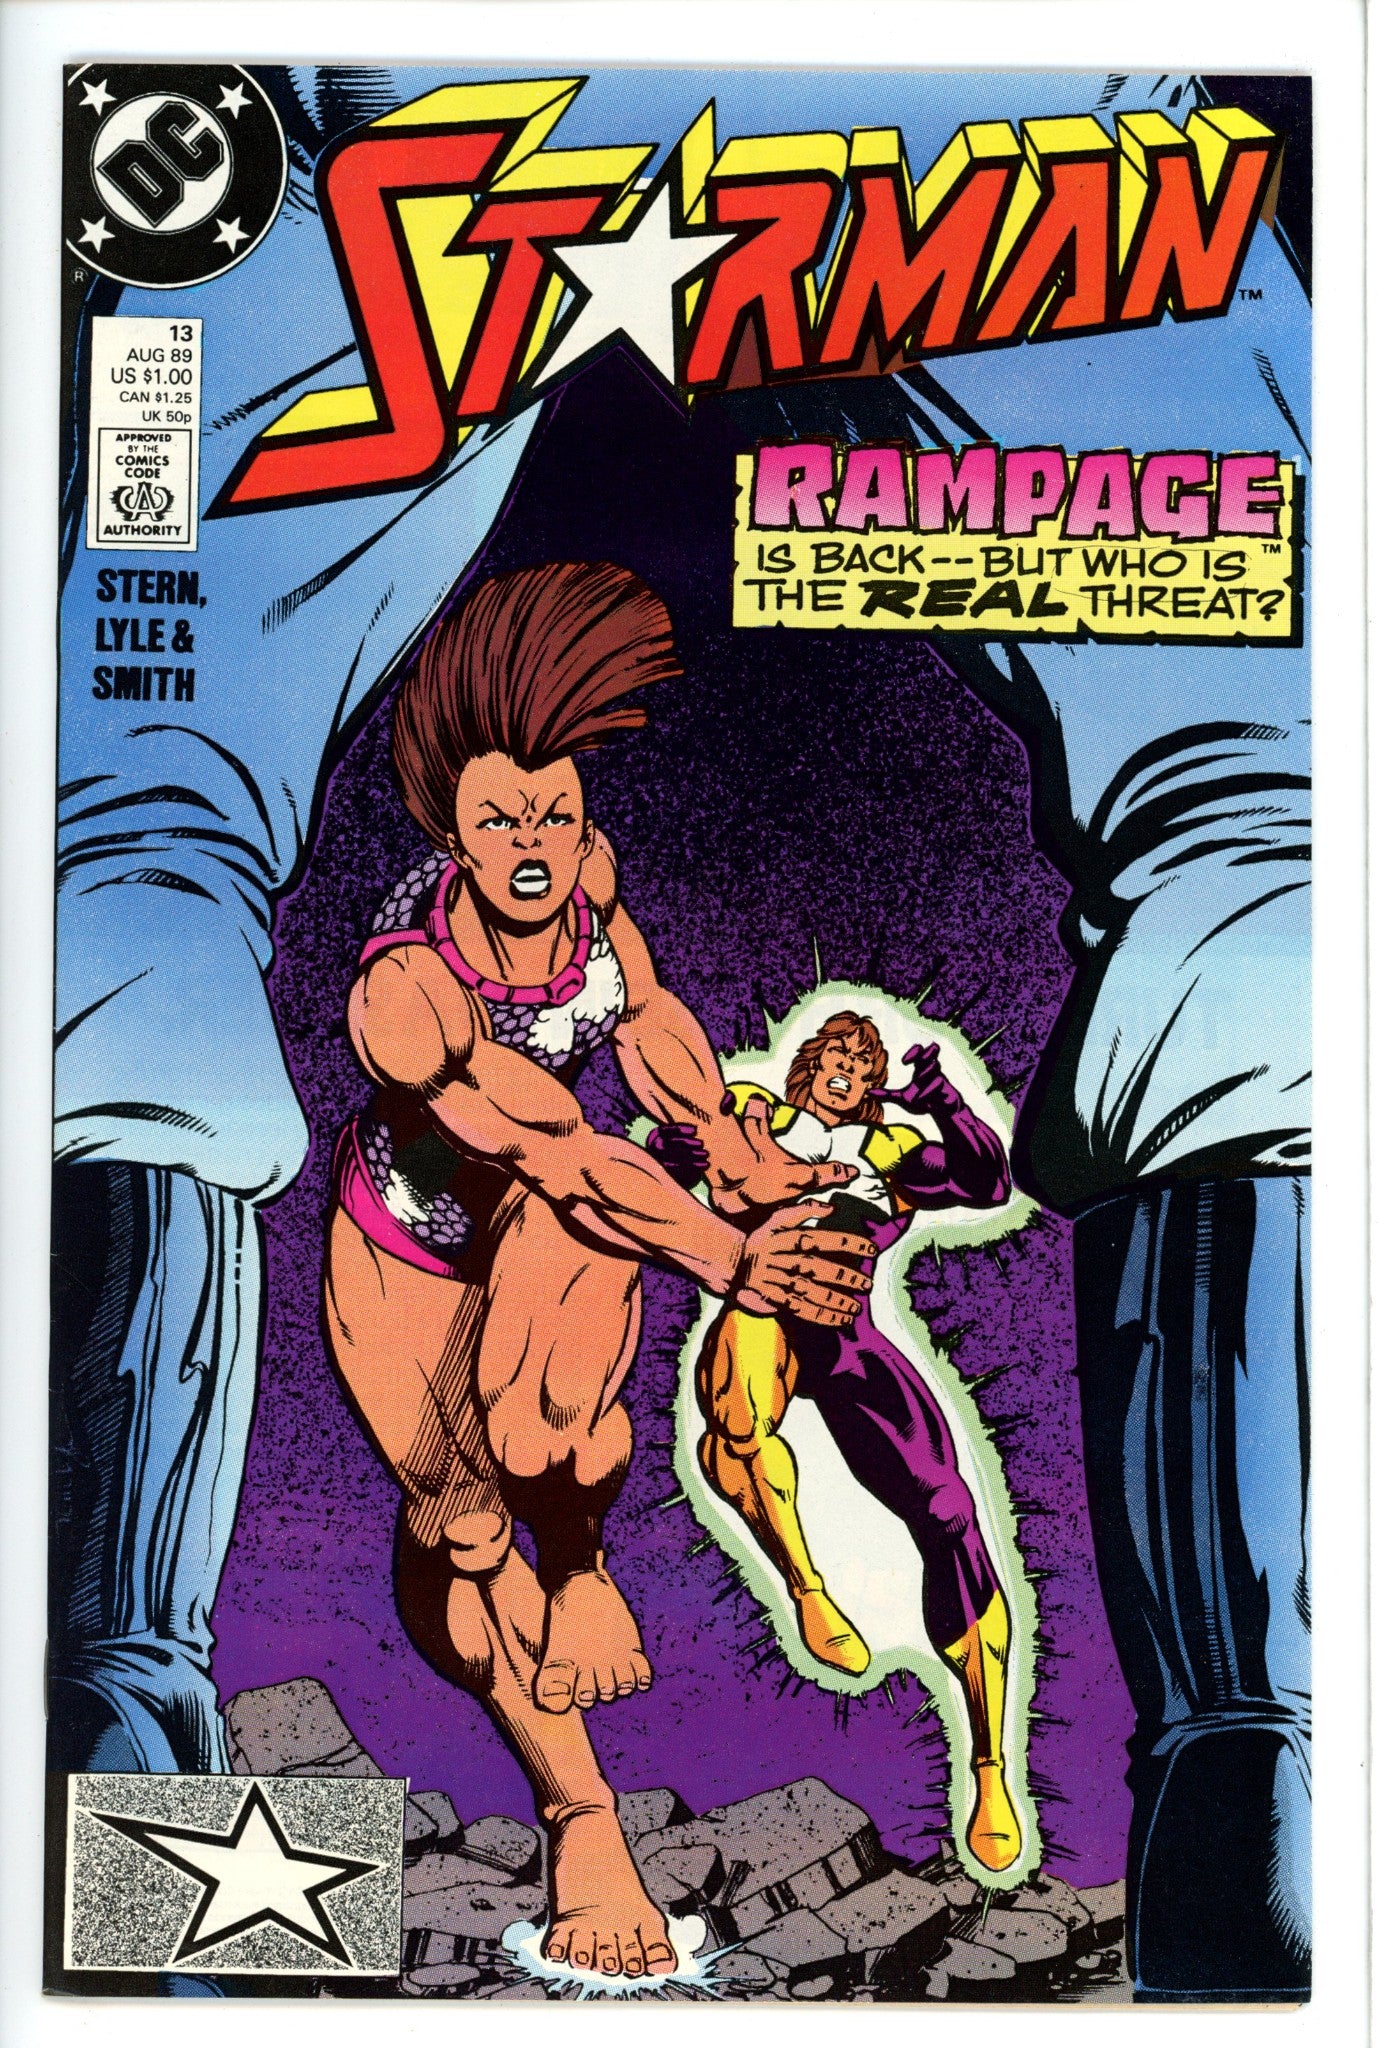 Starman Vol 1 13-DC-CaptCan Comics Inc